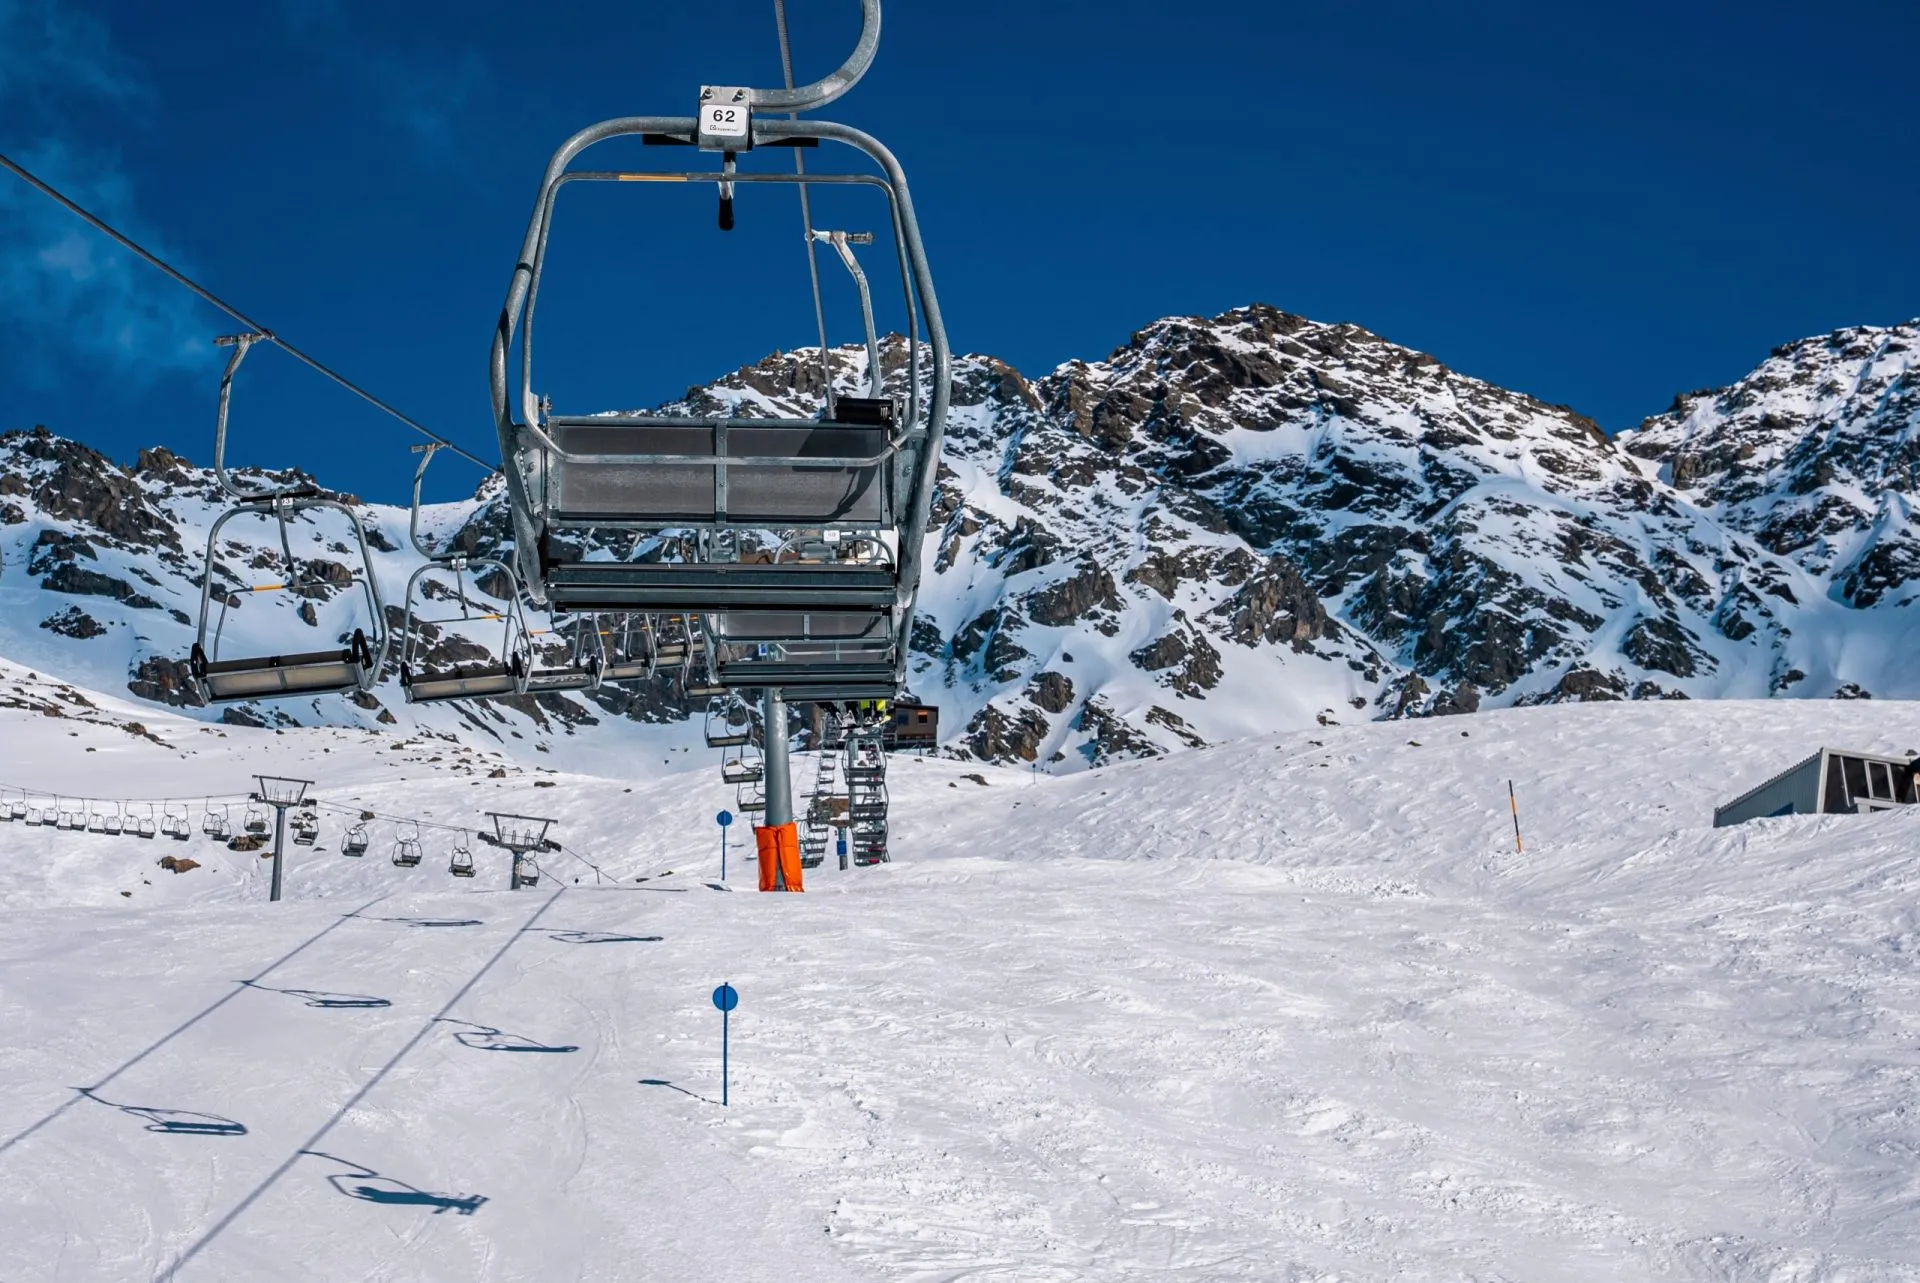 Puste wyciągi krzesełkowe w ośrodku narciarskim na tle ośnieżonych gór w słoneczny dzień